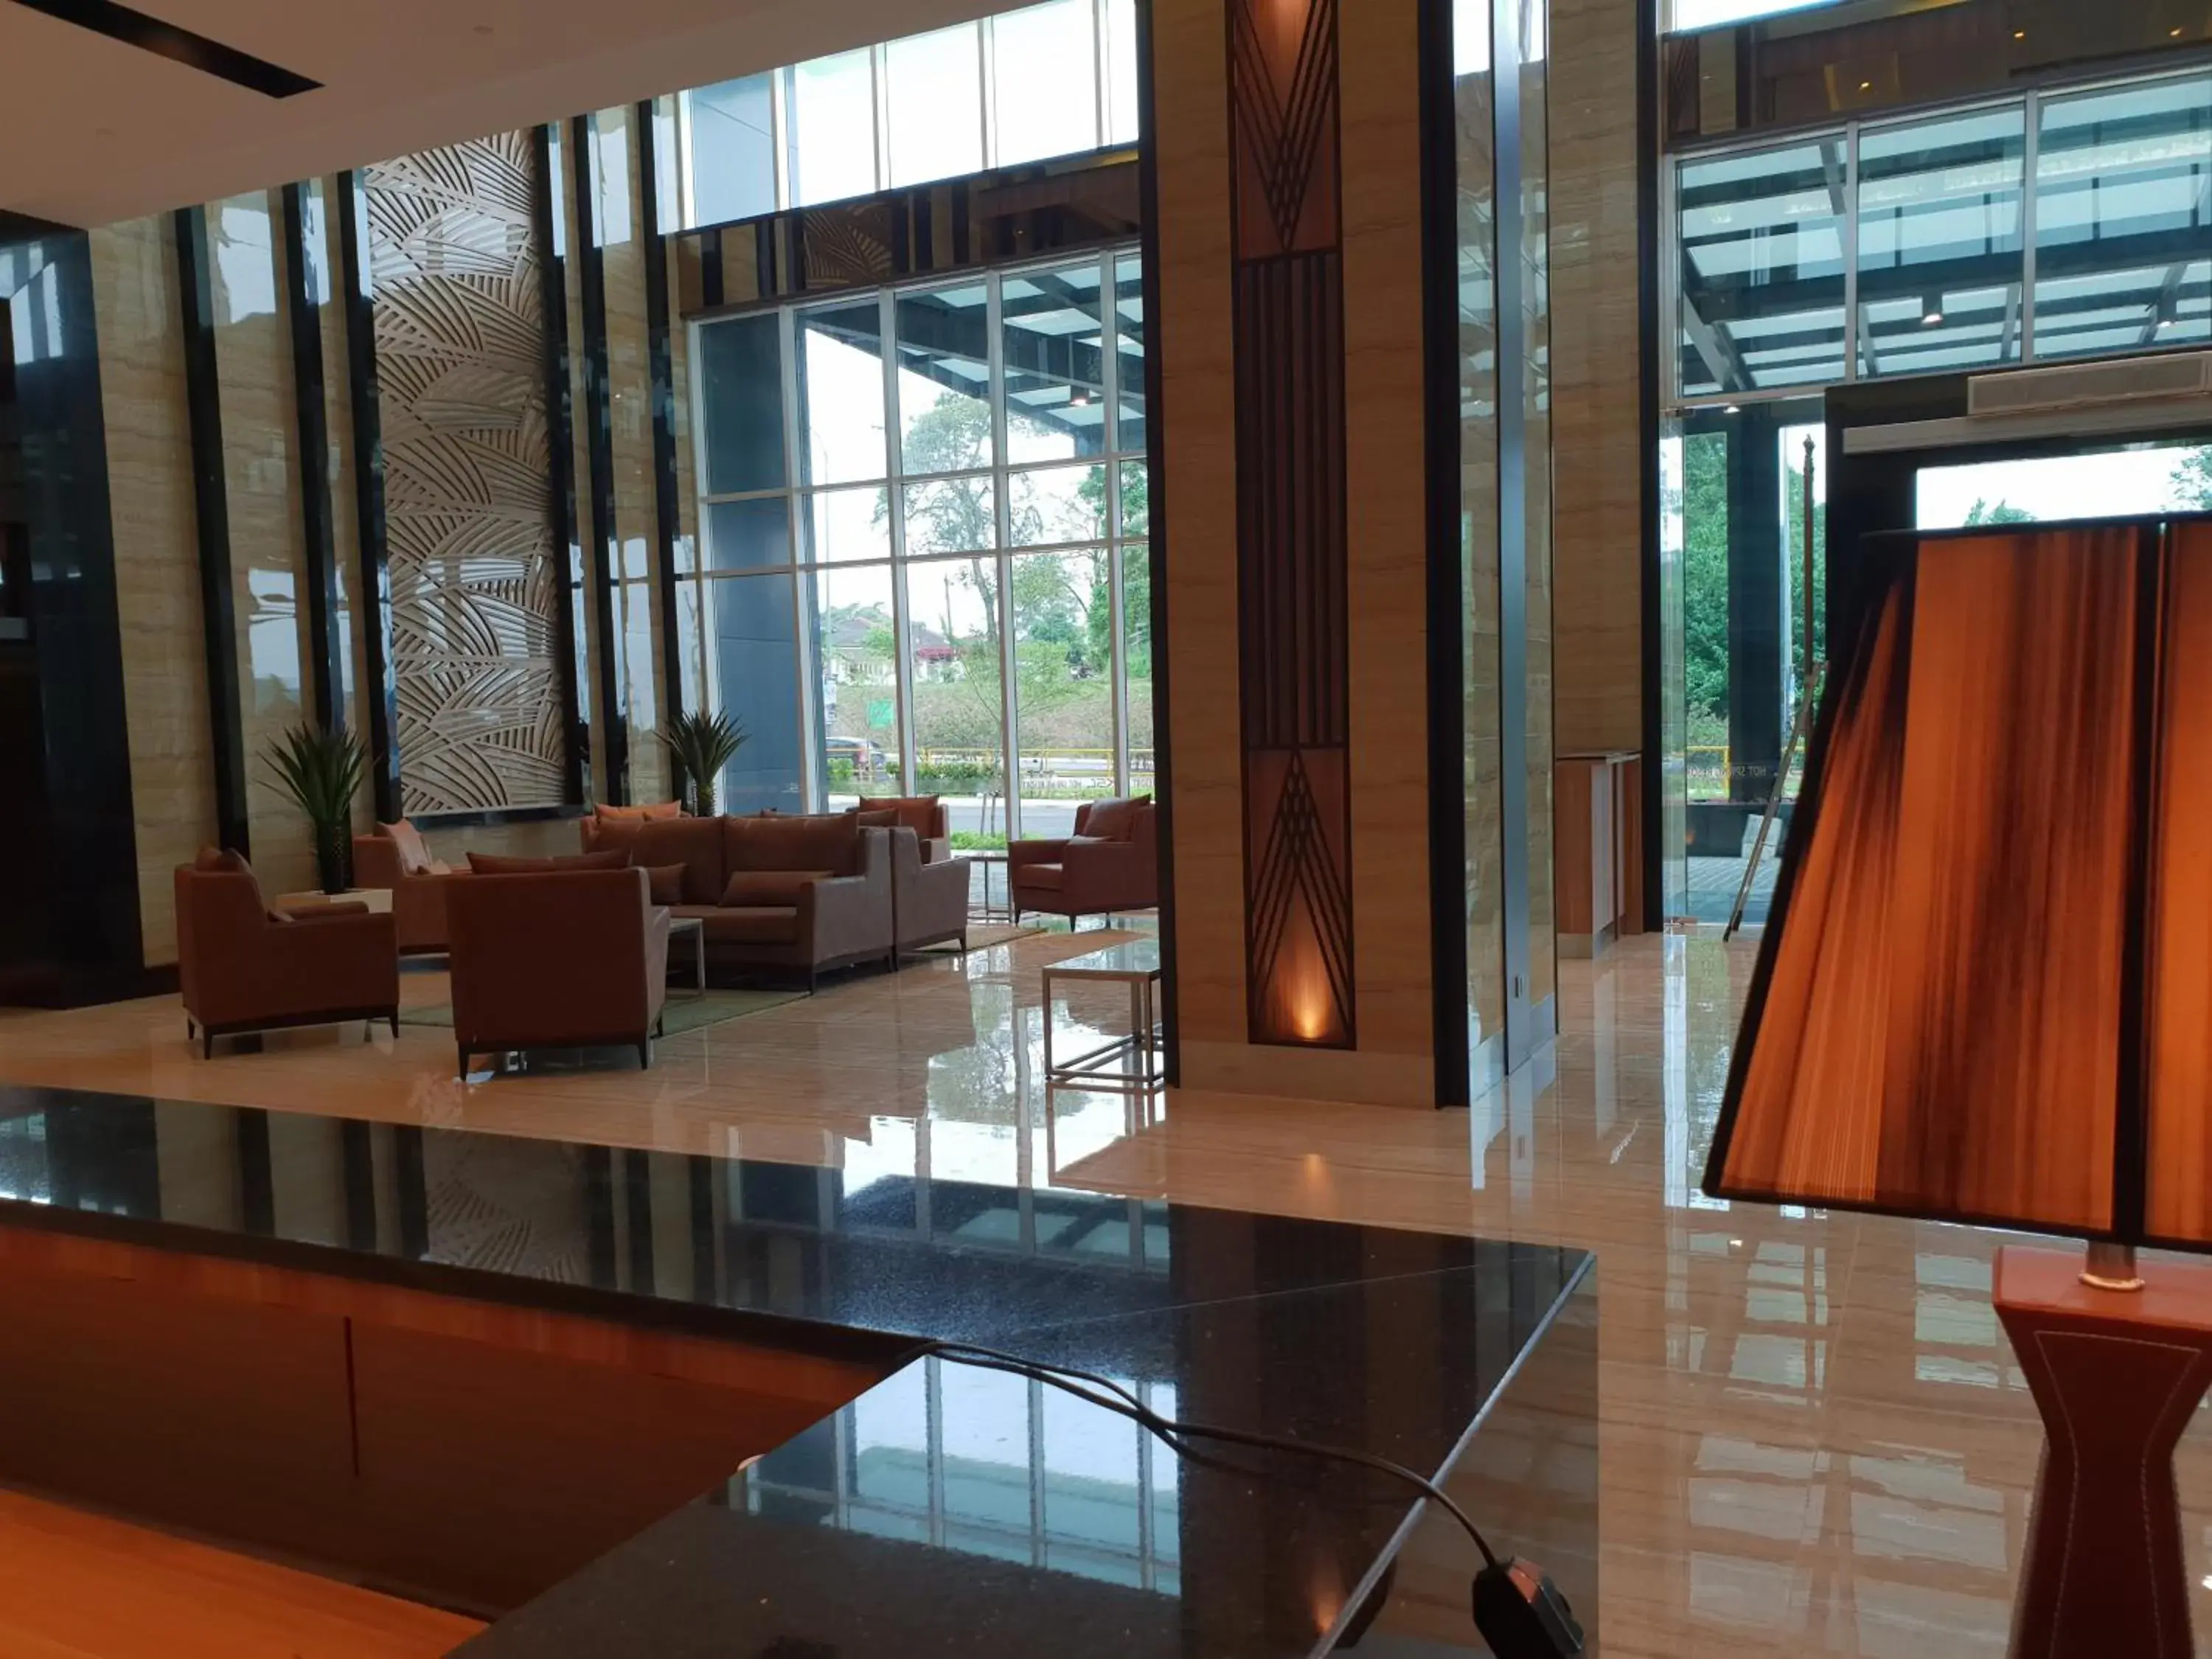 Lobby or reception in KSL Hot Spring Resort